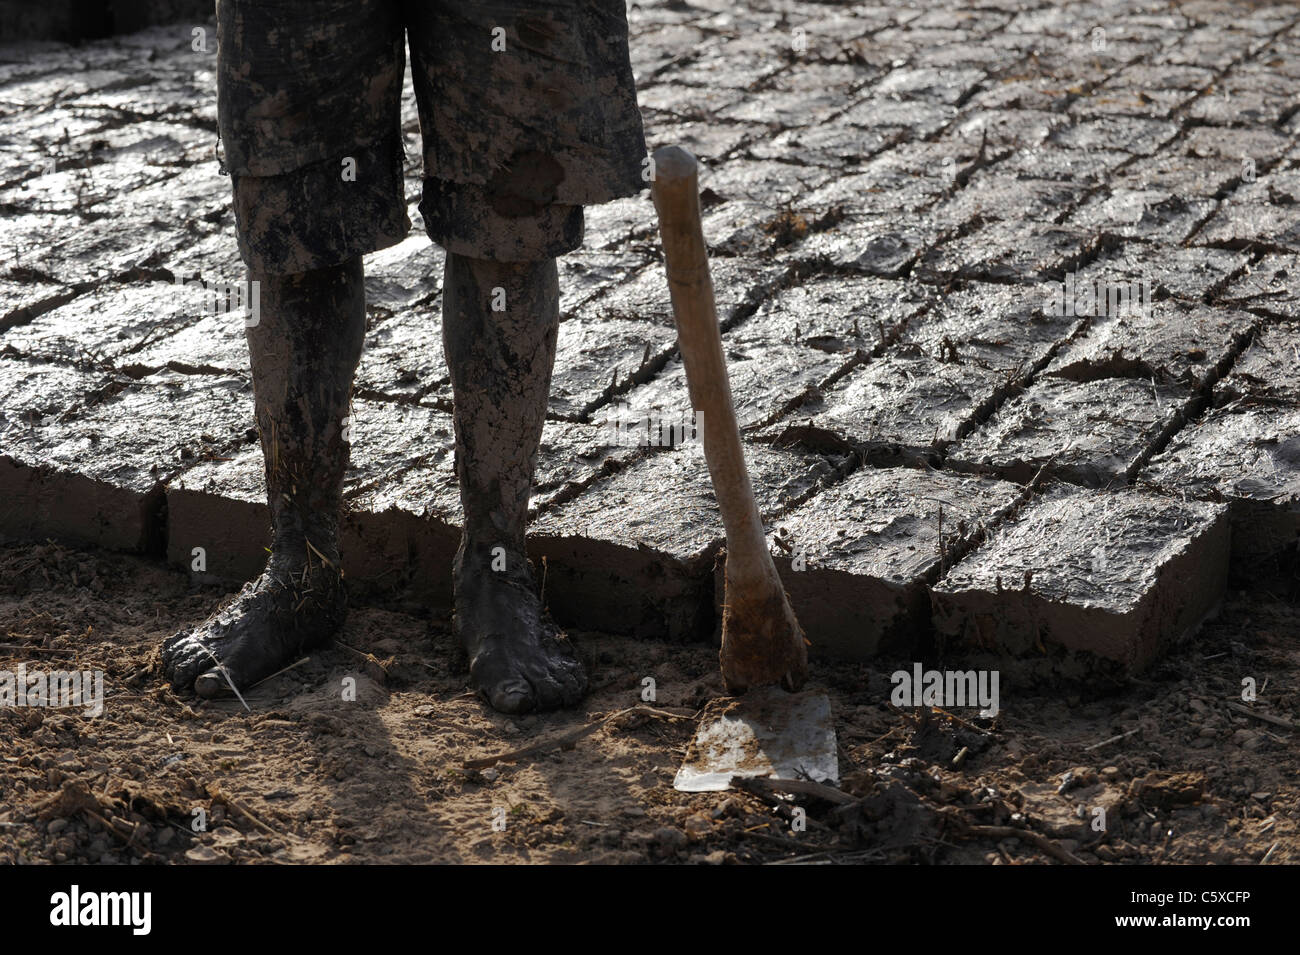 Afrika MALI Mopti, Lehm-Architektur - Arbeitnehmer machen Lehmziegel für Gebäude Stockfoto